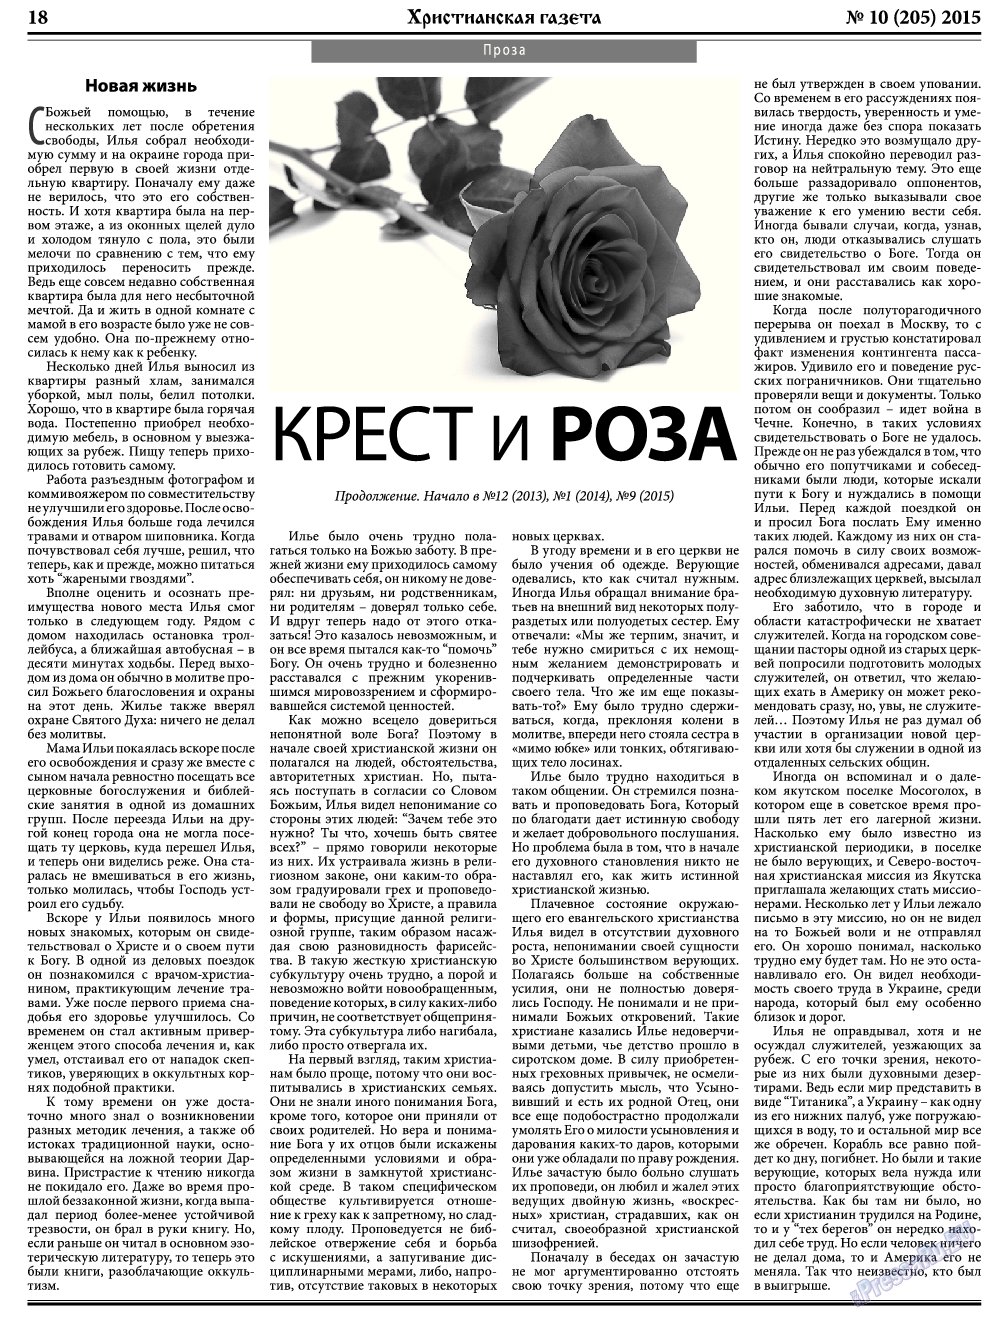 Христианская газета, газета. 2015 №10 стр.26